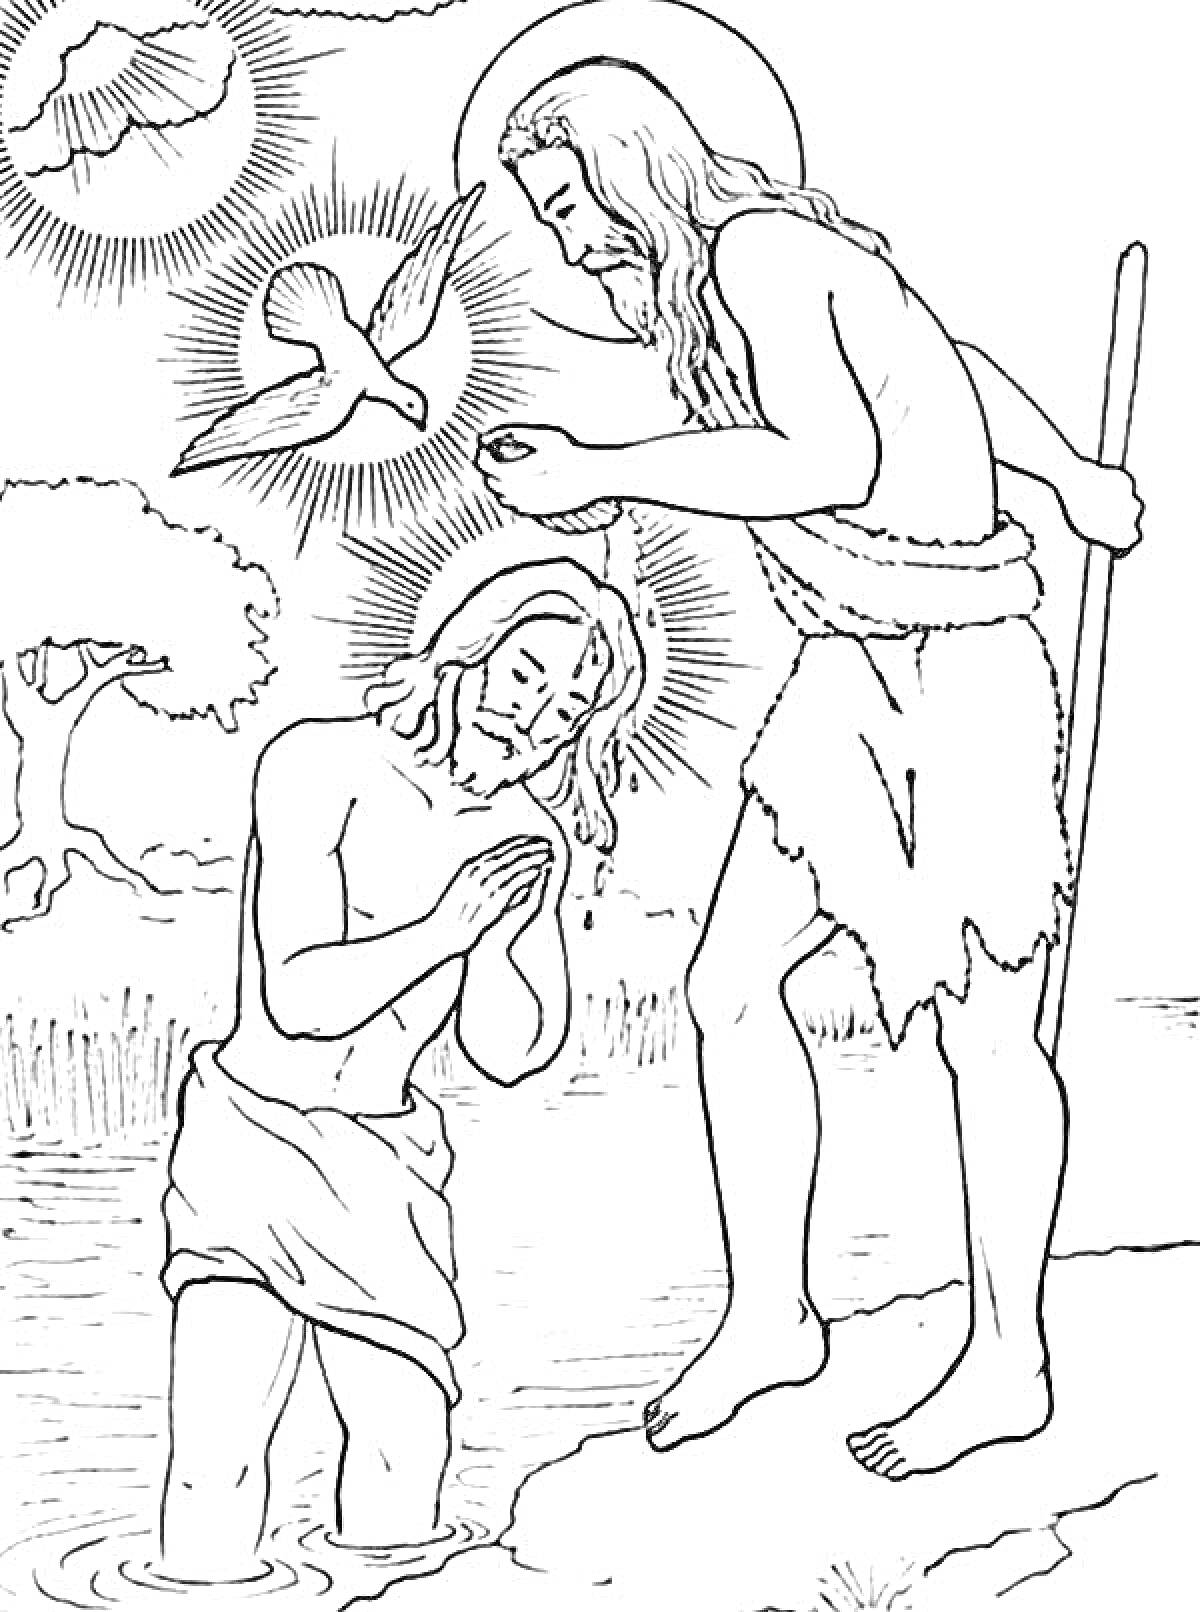 Иисус Христос и Иоанн Креститель на Крещении Господнем у реки со святым духом в виде голубя